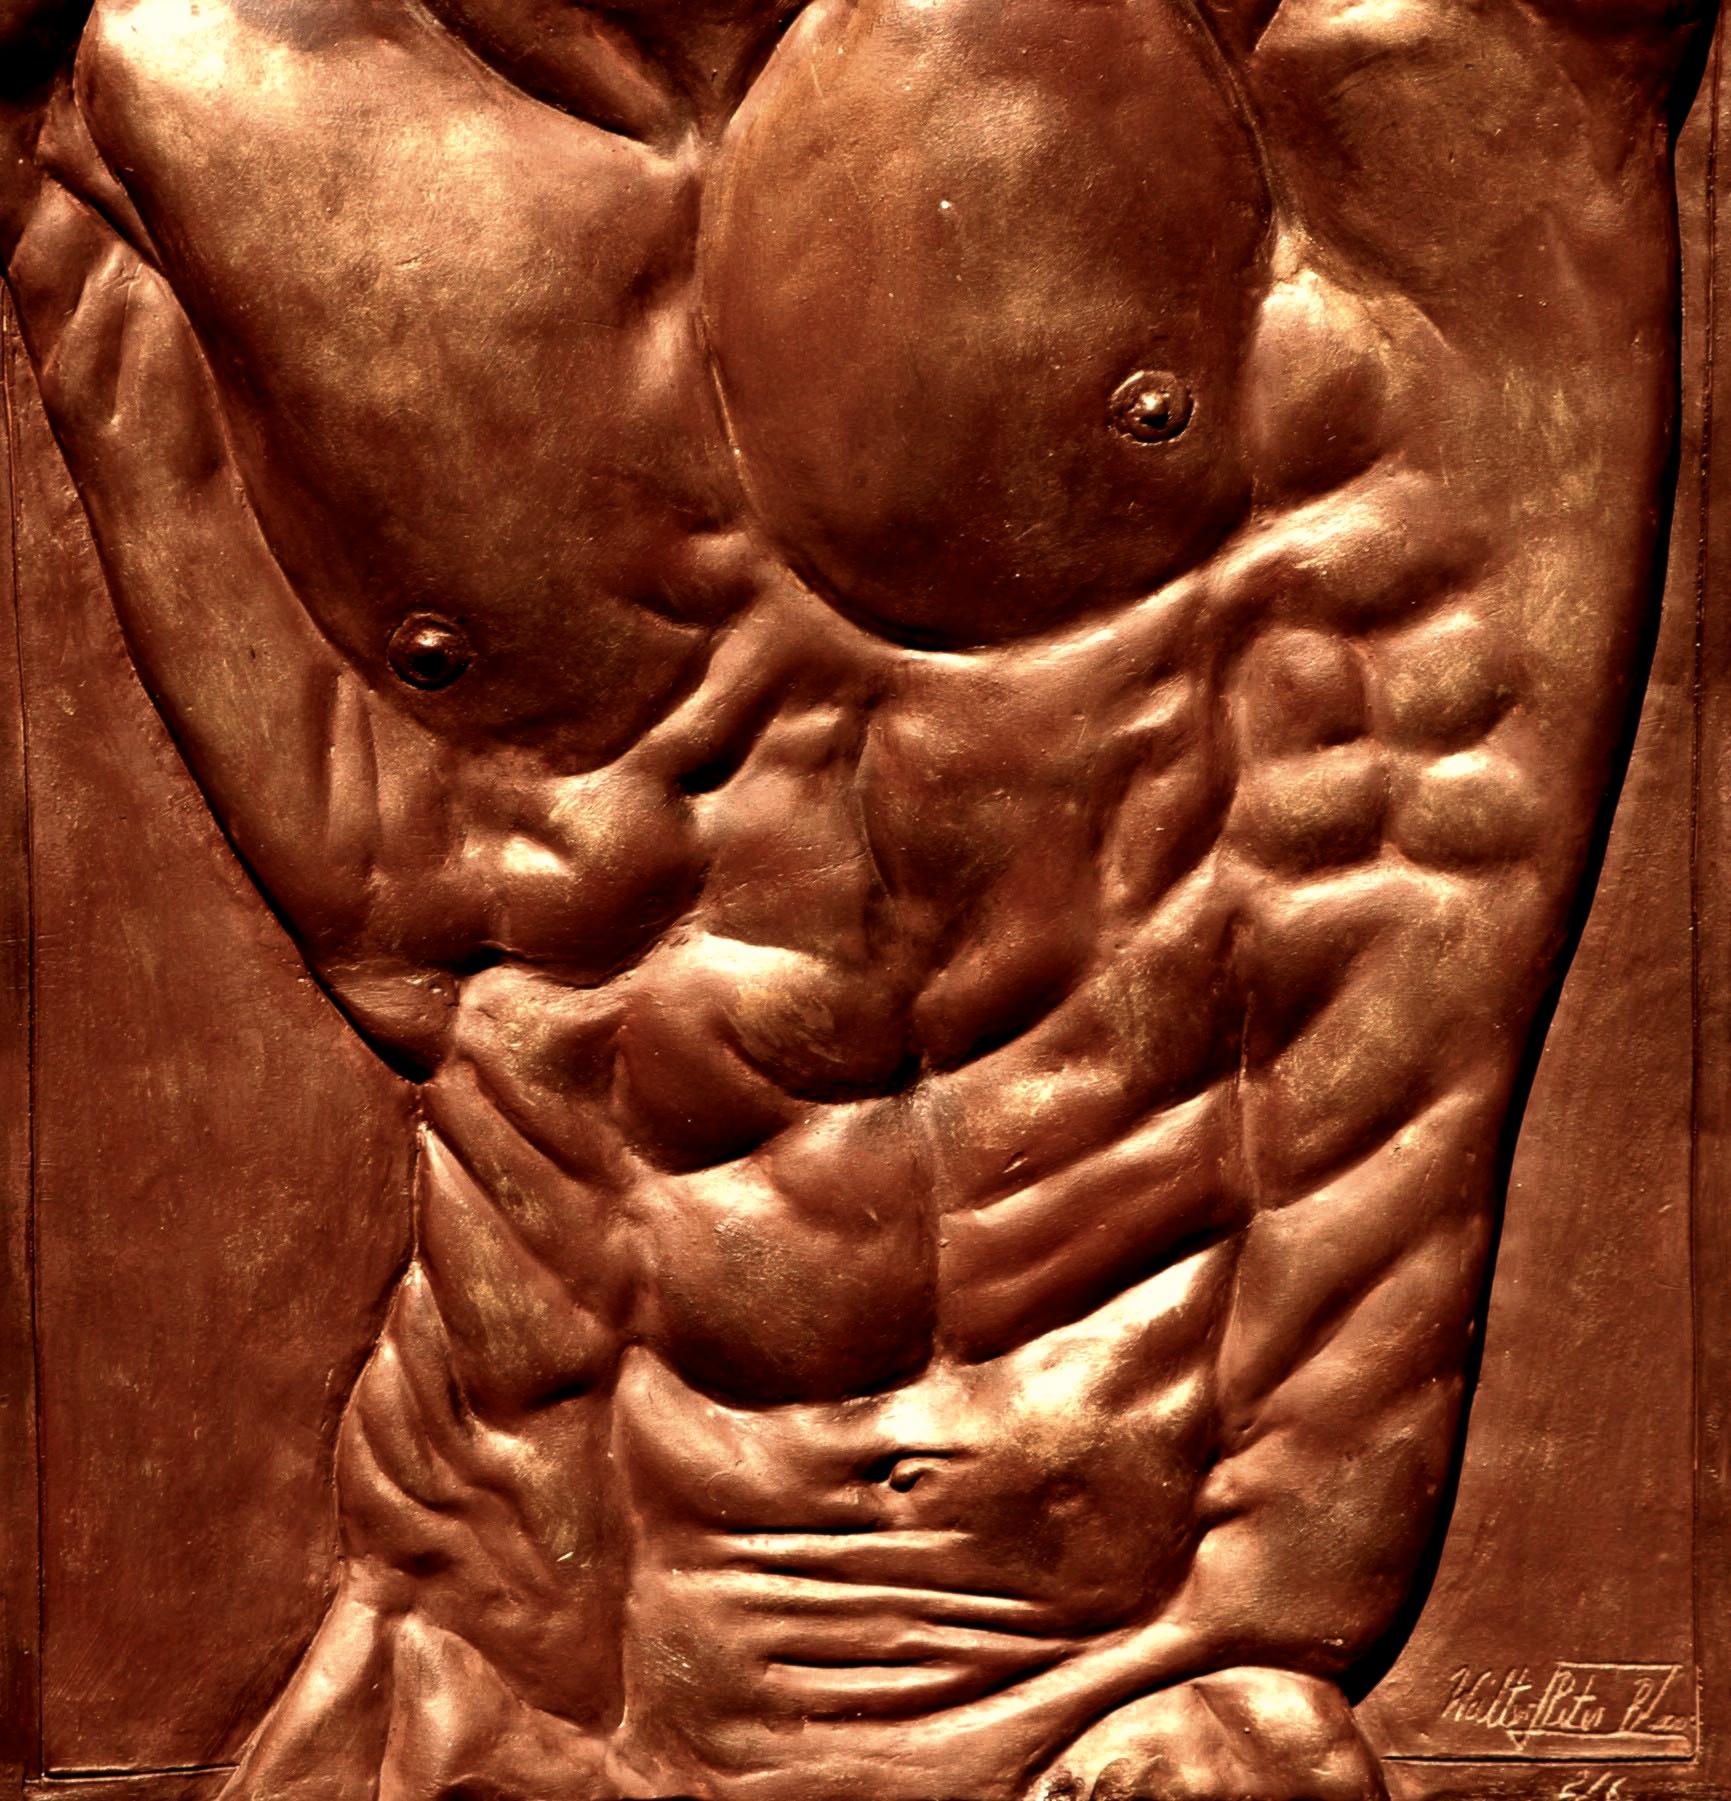 Torso of Hercules est une sculpture en bronze à patine brune à base de nitrate de fer et finition à la cire. Sculpture de l'artiste contemporain Walter Peter Brenner, dont les dimensions sont de 38 × 38 × 3 cm (15 × 15 × 1,2 in). 
La sculpture est